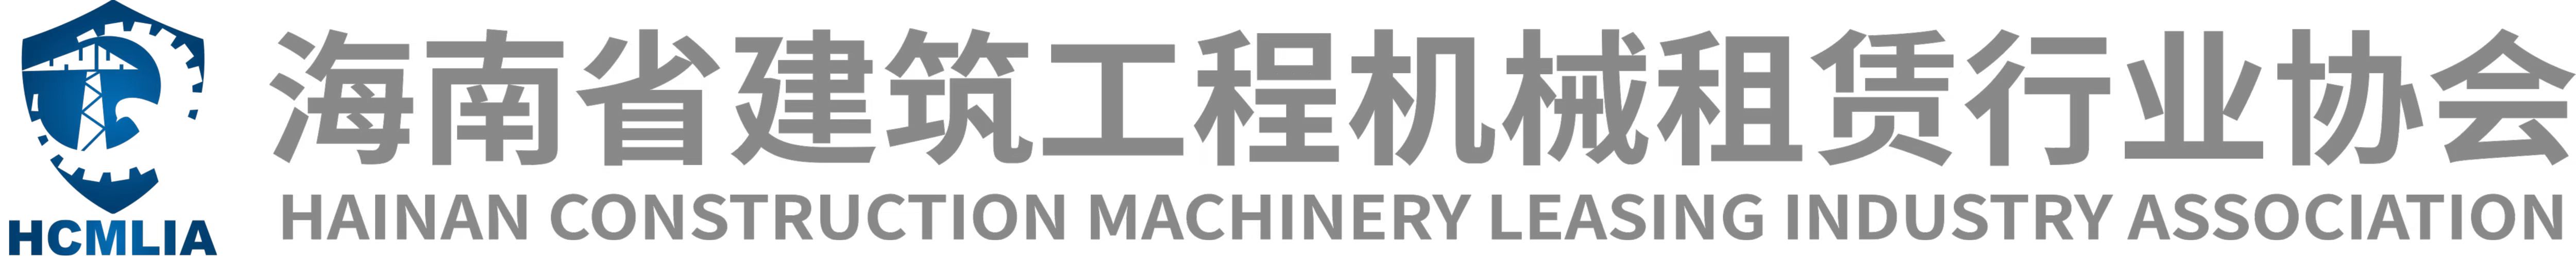 海南省建筑工程机械租赁行业协会